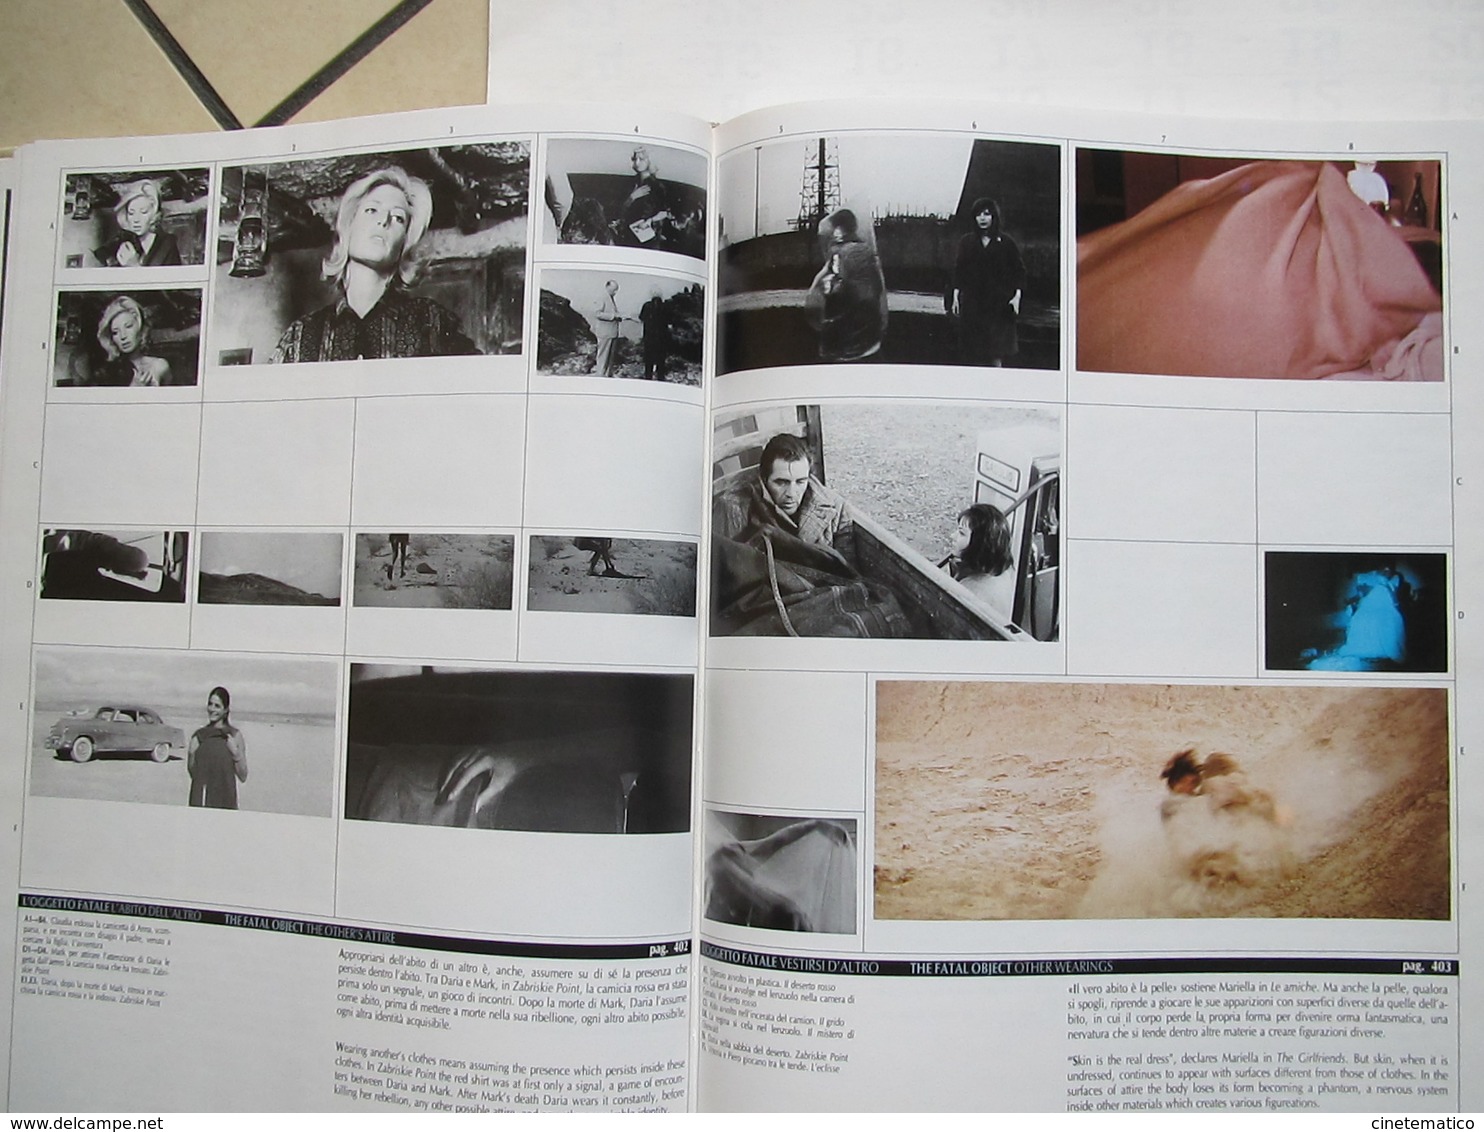 Libro/book/livre/buch "Michelangelo Antonioni - Architetture Della Visione" - Cinema & Music